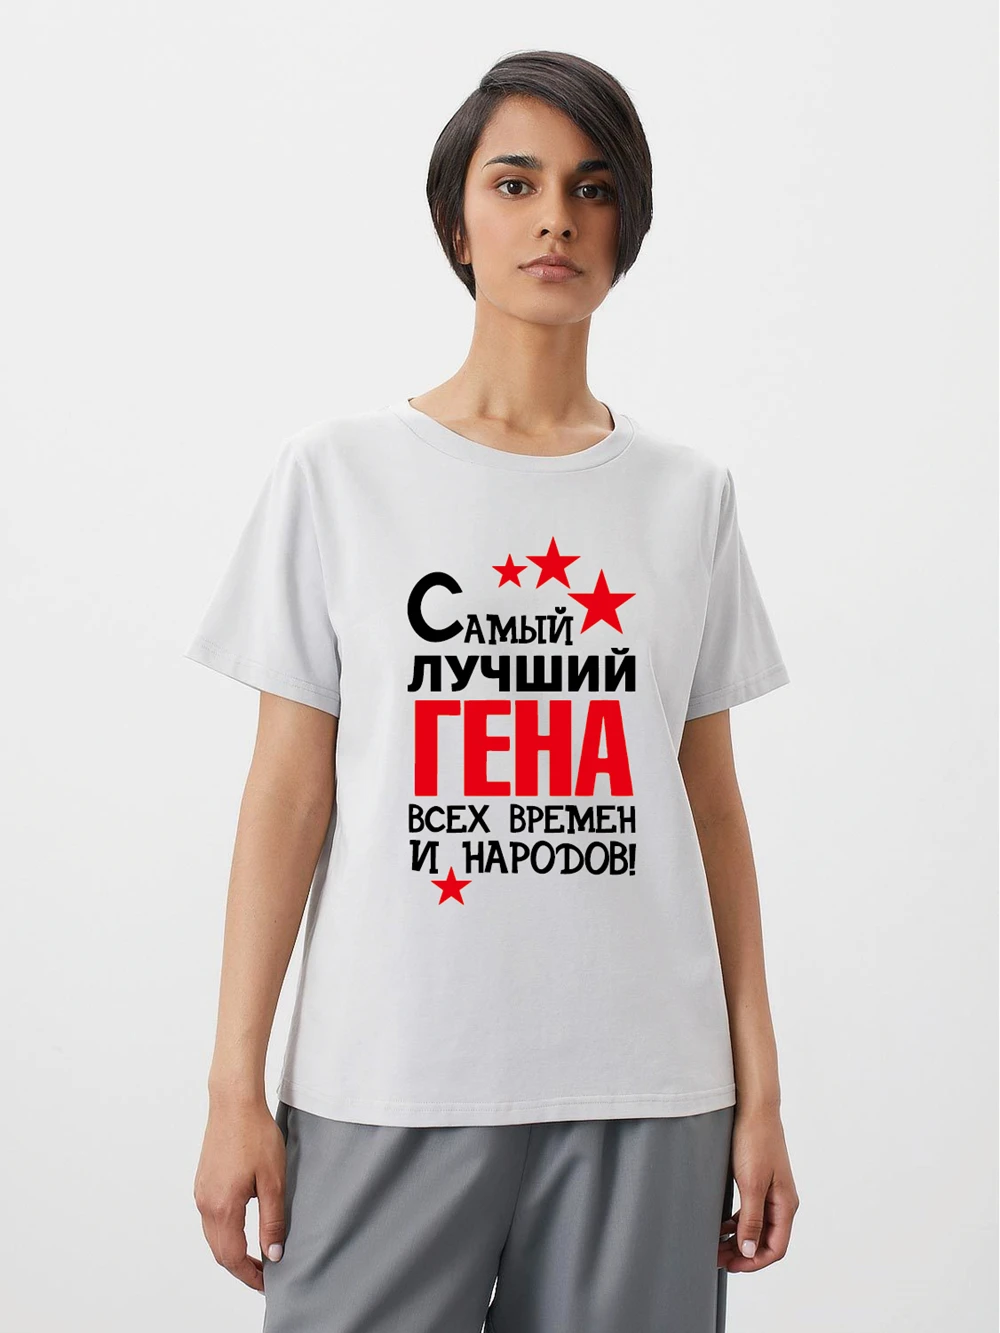 

Женская хлопковая Футболка с принтом Лучший Гена И Народов! Модная рубашка в русском стиле унисекс футболки под заказ